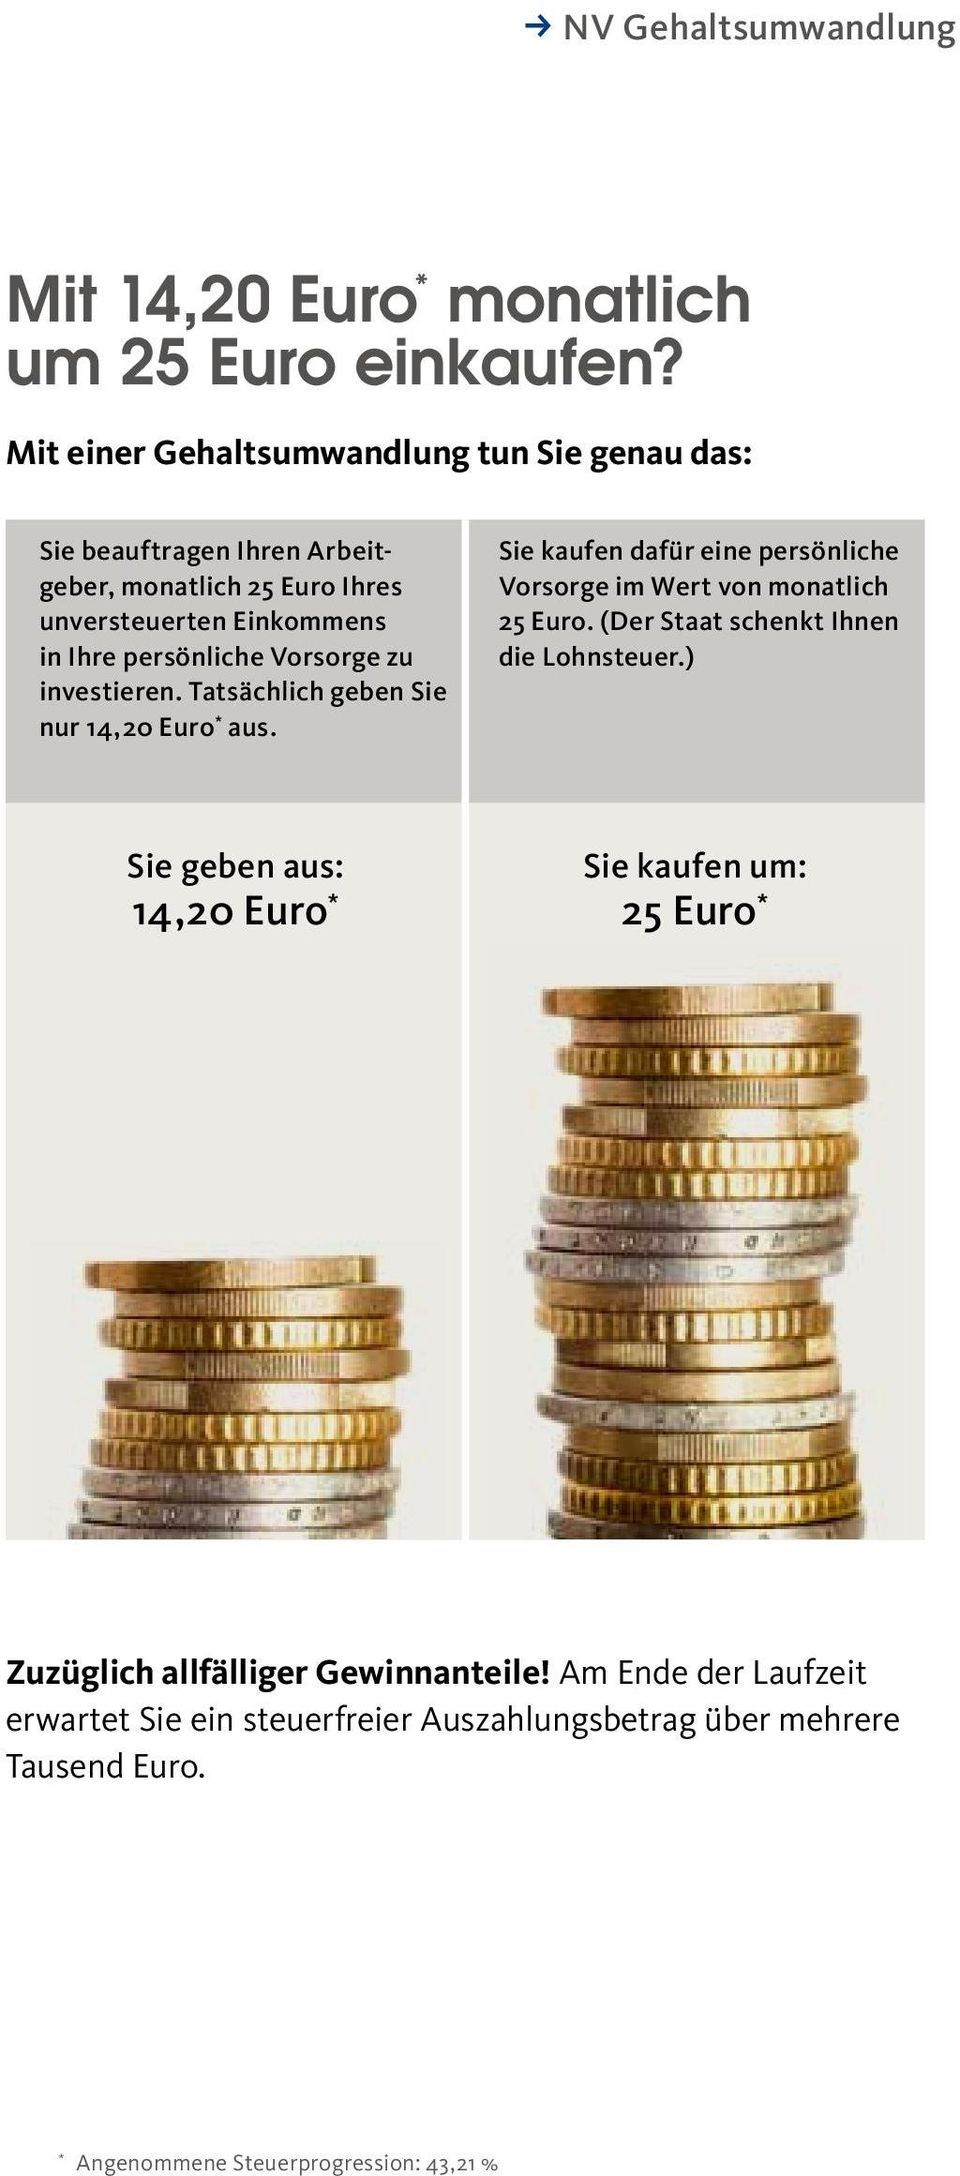 Vorsorge zu investieren. Tatsächlich geben Sie nur 14,20 Euro * aus. Sie kaufen dafür eine persönliche Vorsorge im Wert von monatlich 25 Euro.